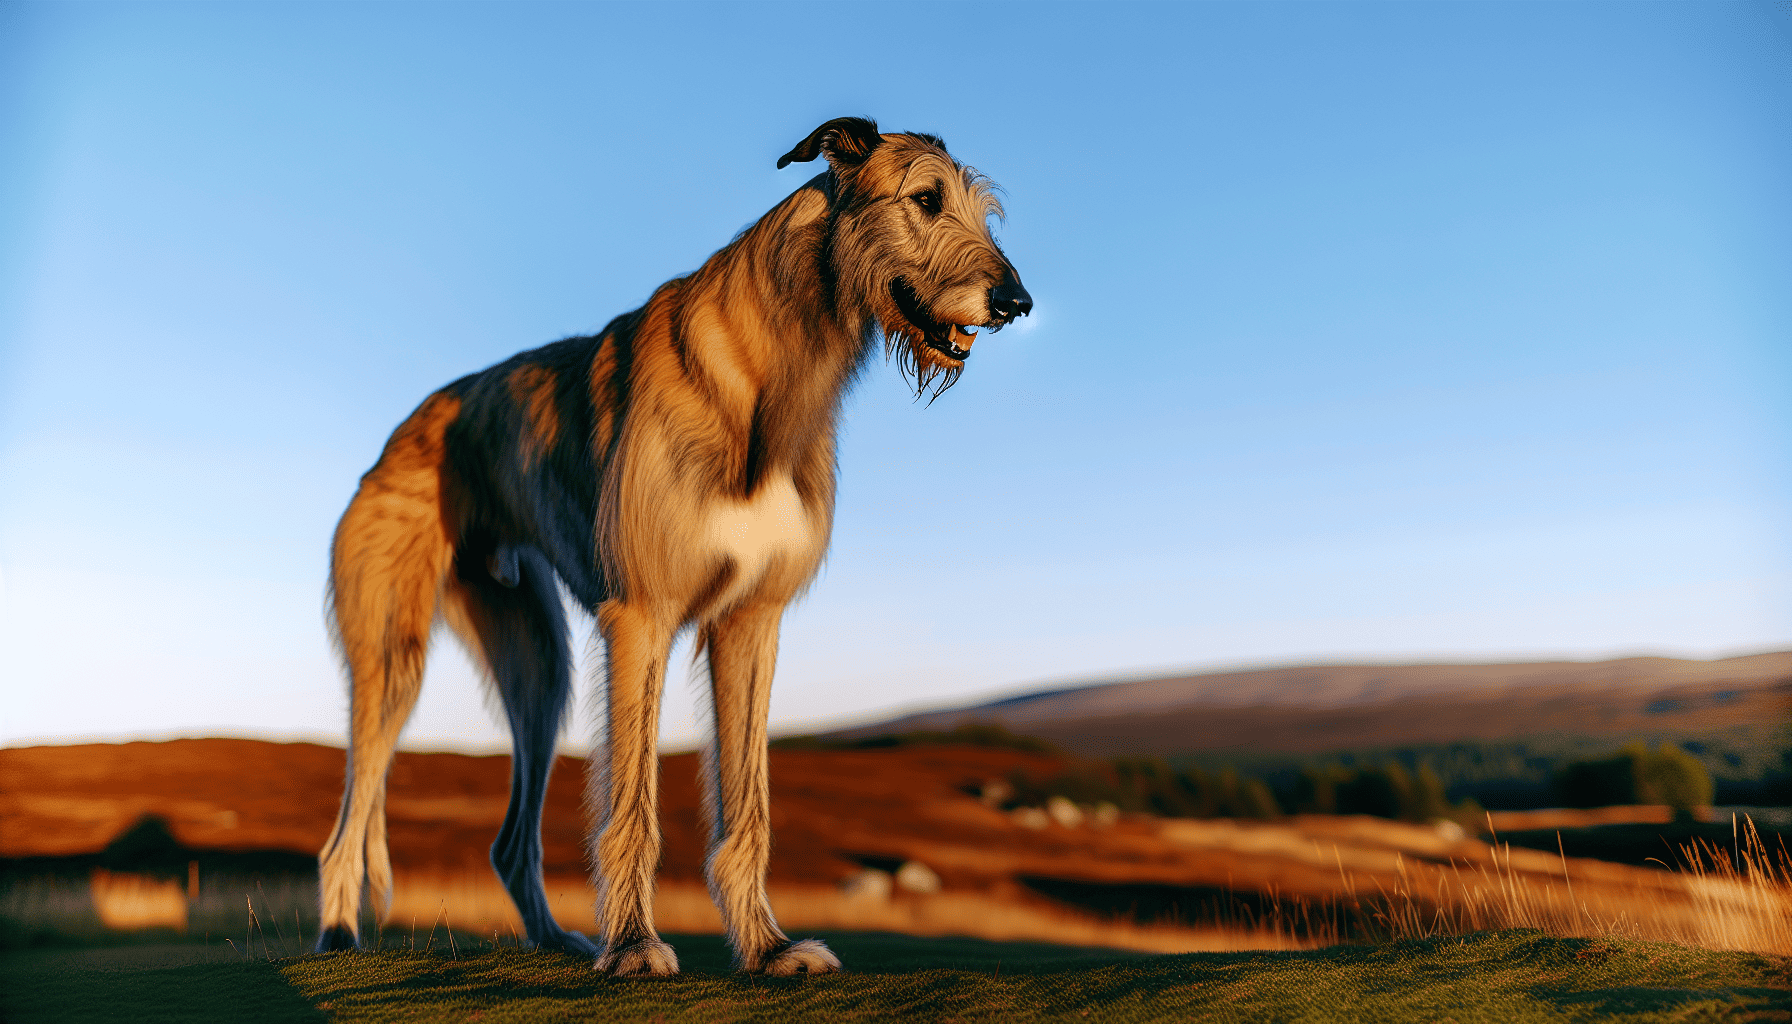 Majestic Irish Wolfhound standing tall on a hill